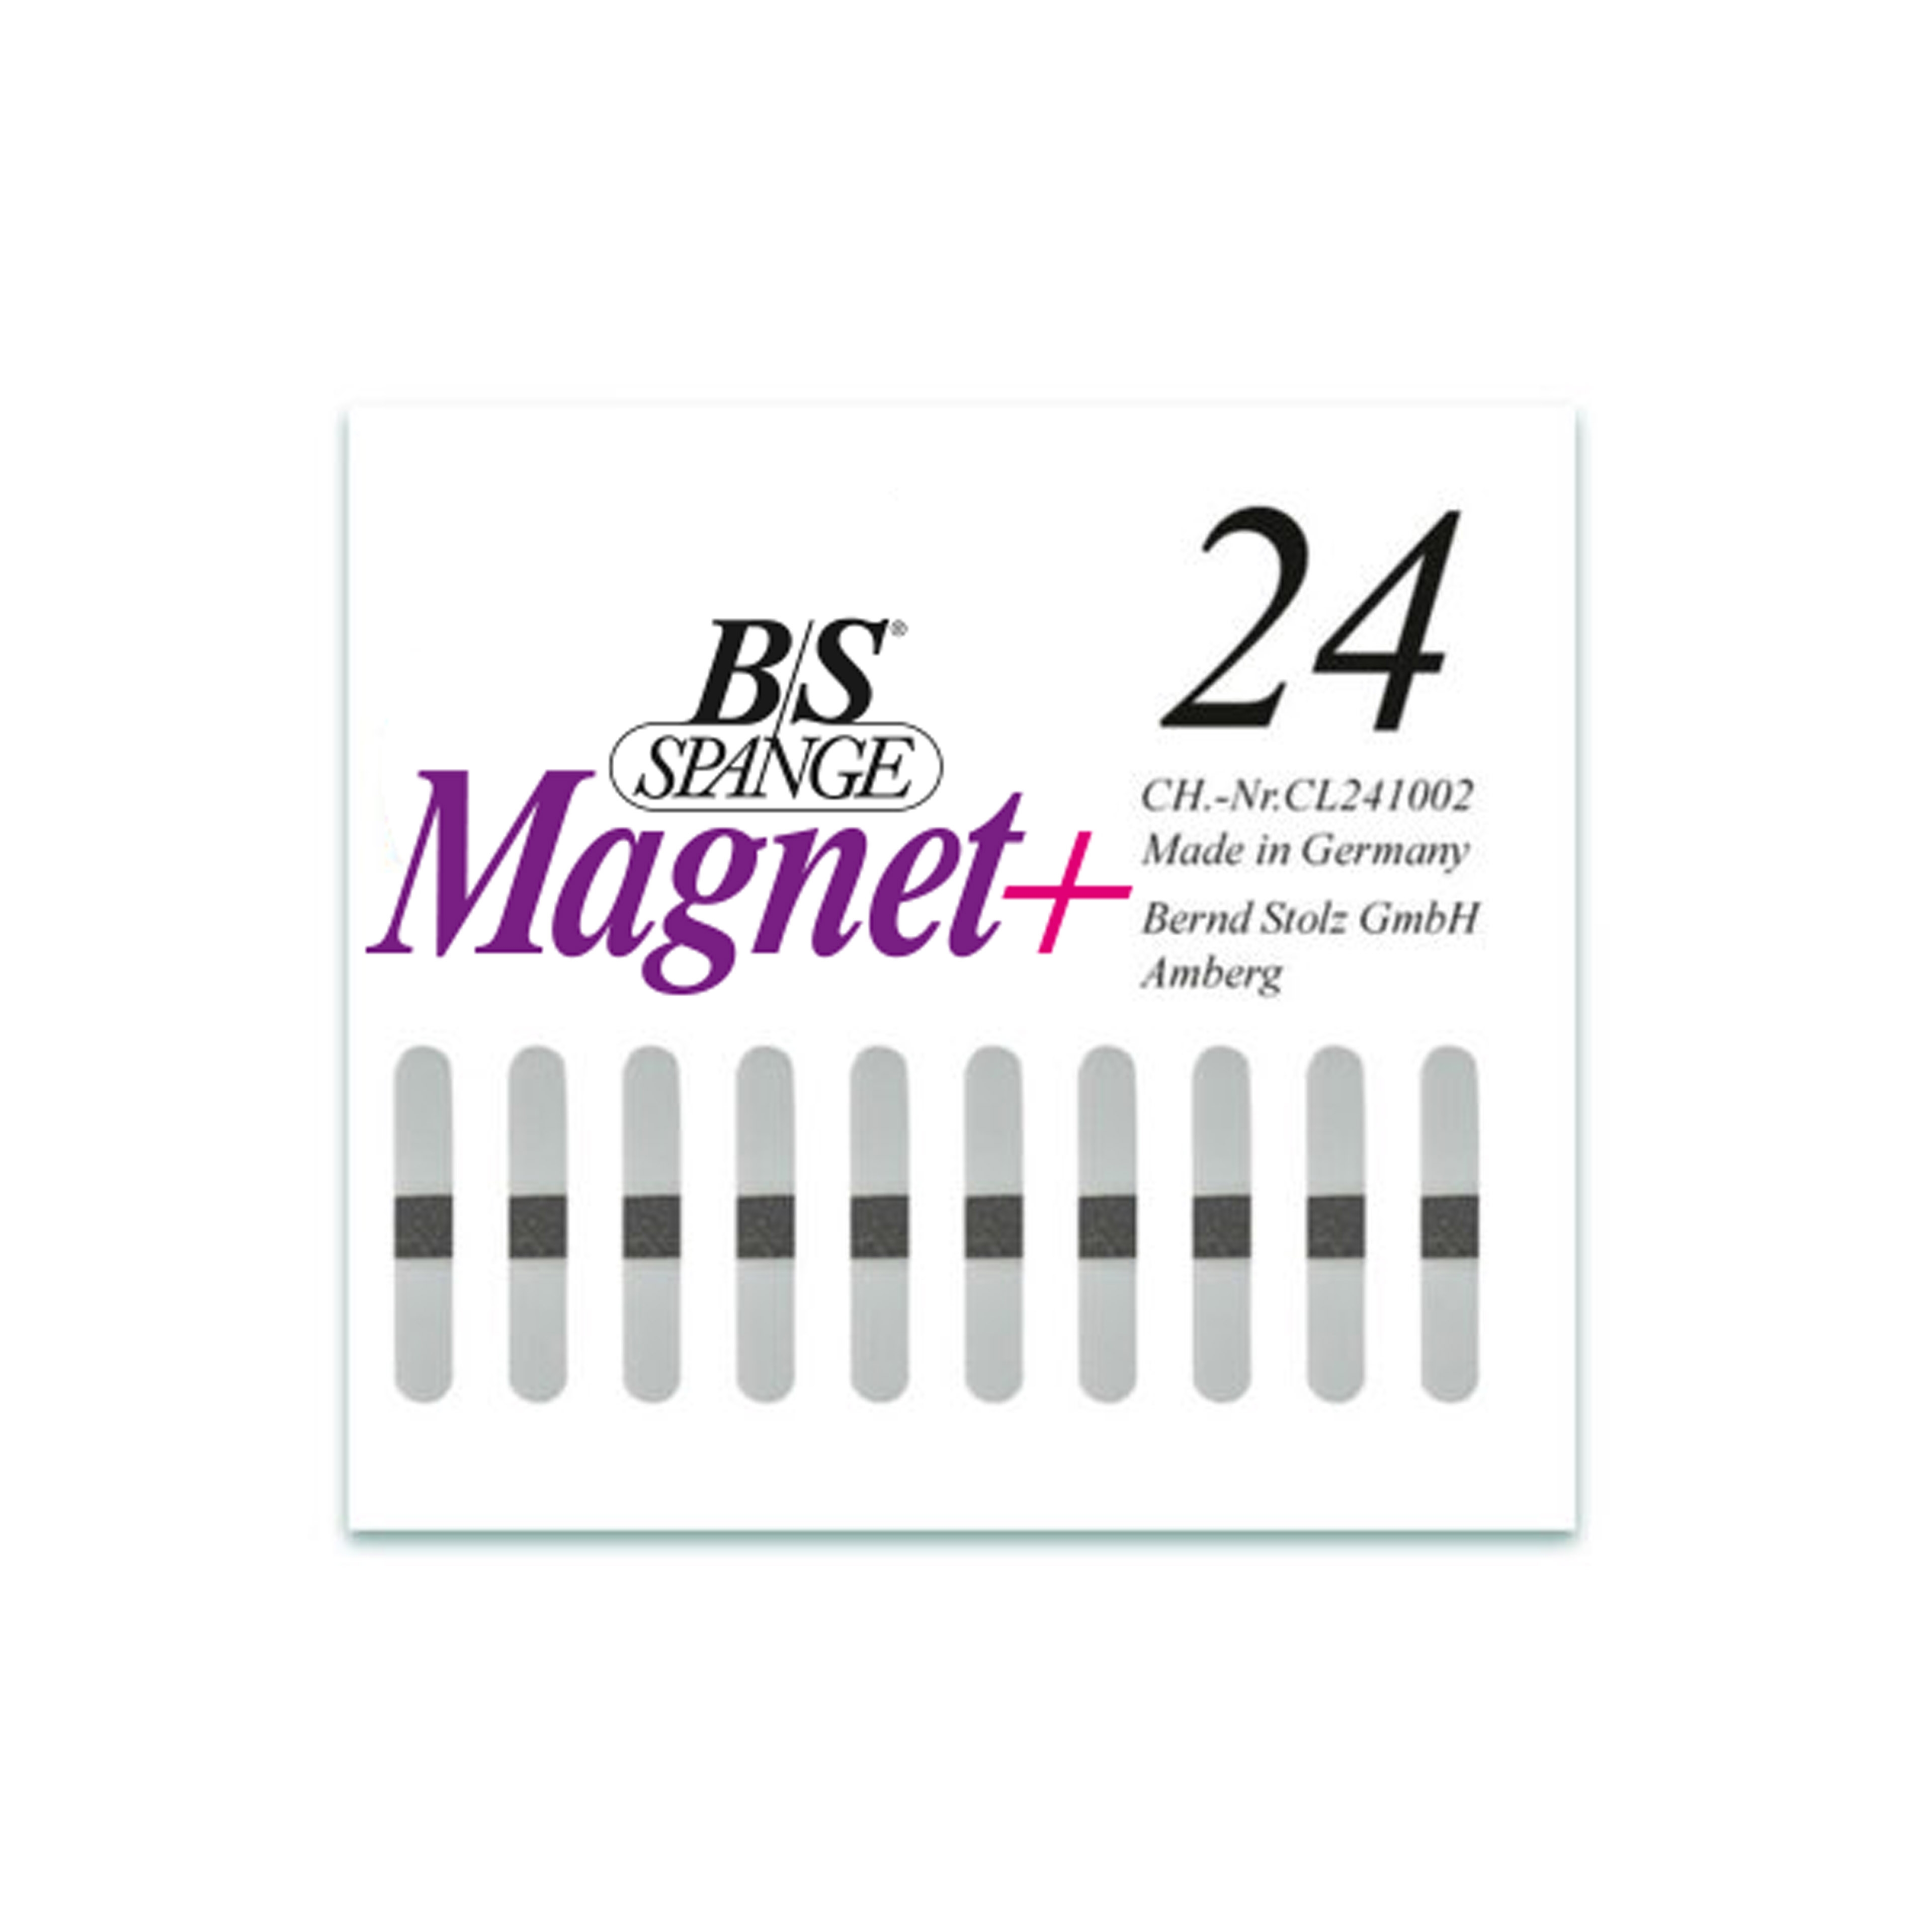 B/S Spange Magnet+ | Länge 24 Breite 4 mm 10 Stück